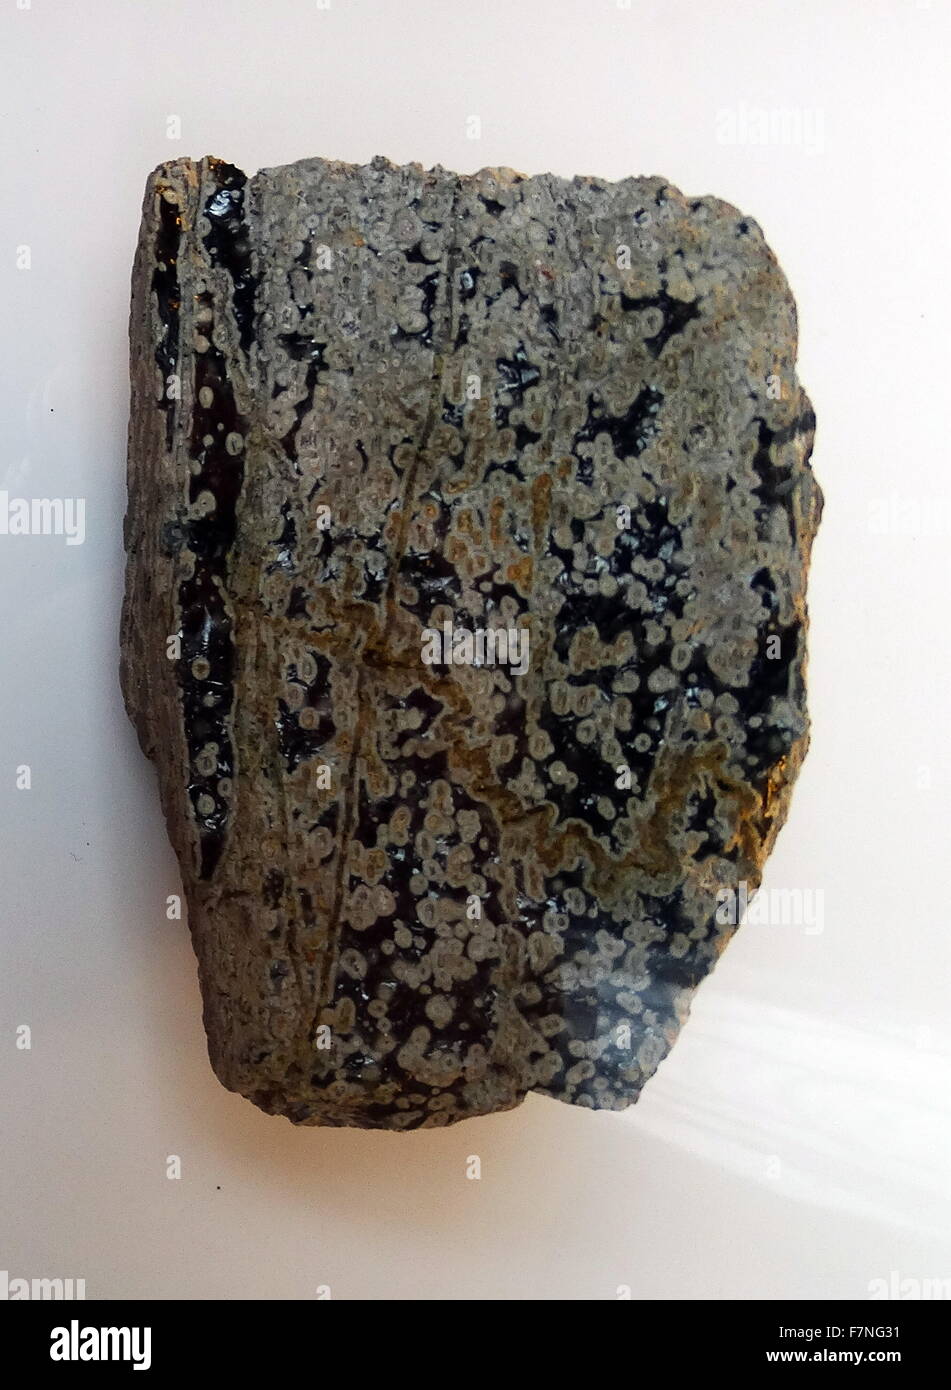 Modifizierungsbox Obsidian, kleinen, runden Körper, die häufig, in glasigen magmatischen Gesteinen, von Lipari Inseln, Italien auftreten Stockfoto